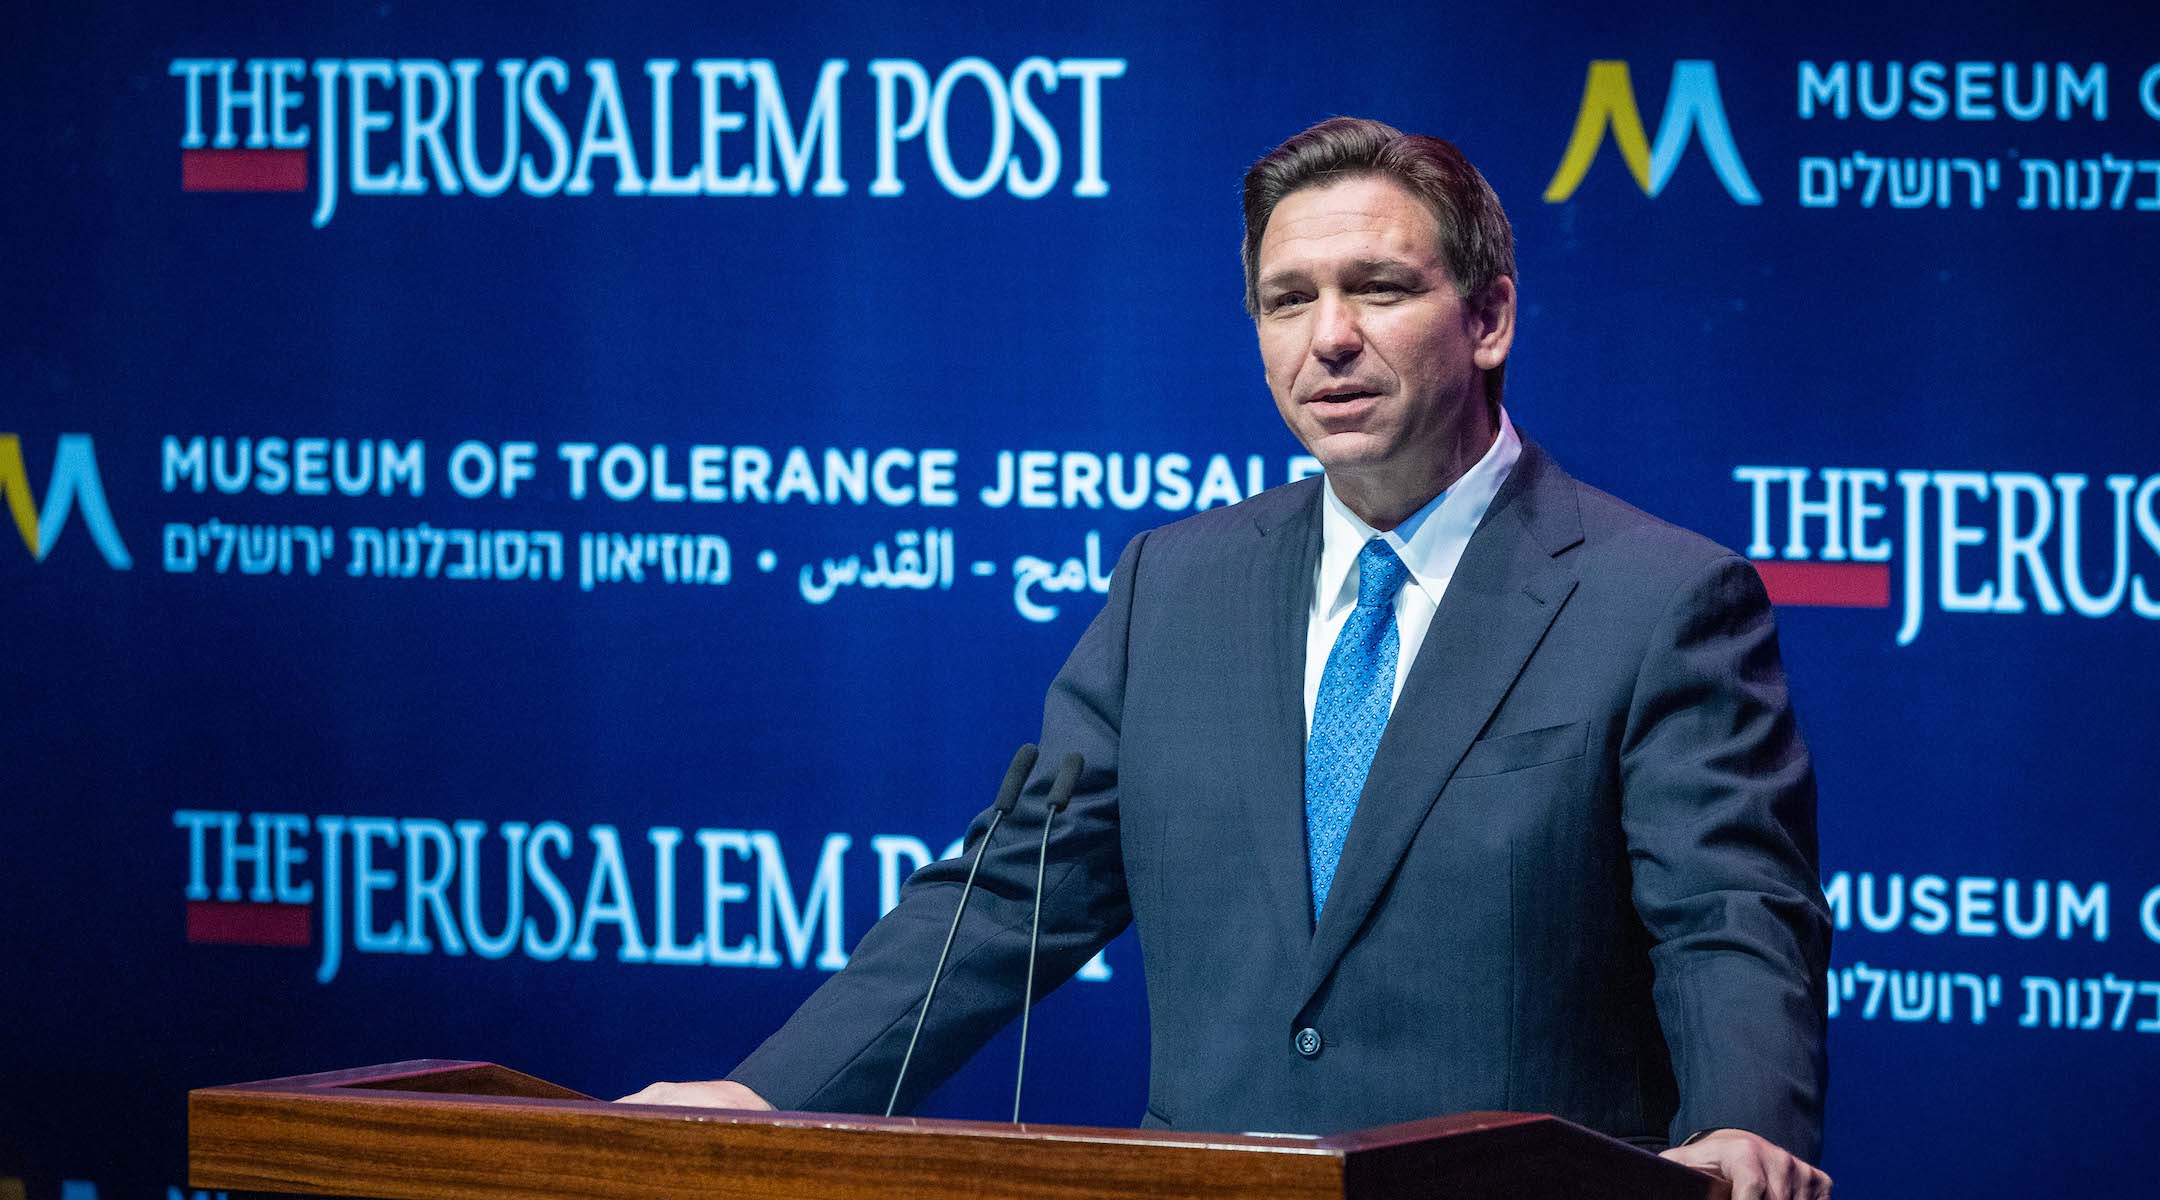 Le gouverneur de Floride, Ron DeSantis, prend la parole lors d'une conférence du Jerusalem Post au Musée de la tolérance à Jérusalem.  (Yonatan Sindel/Flash90)